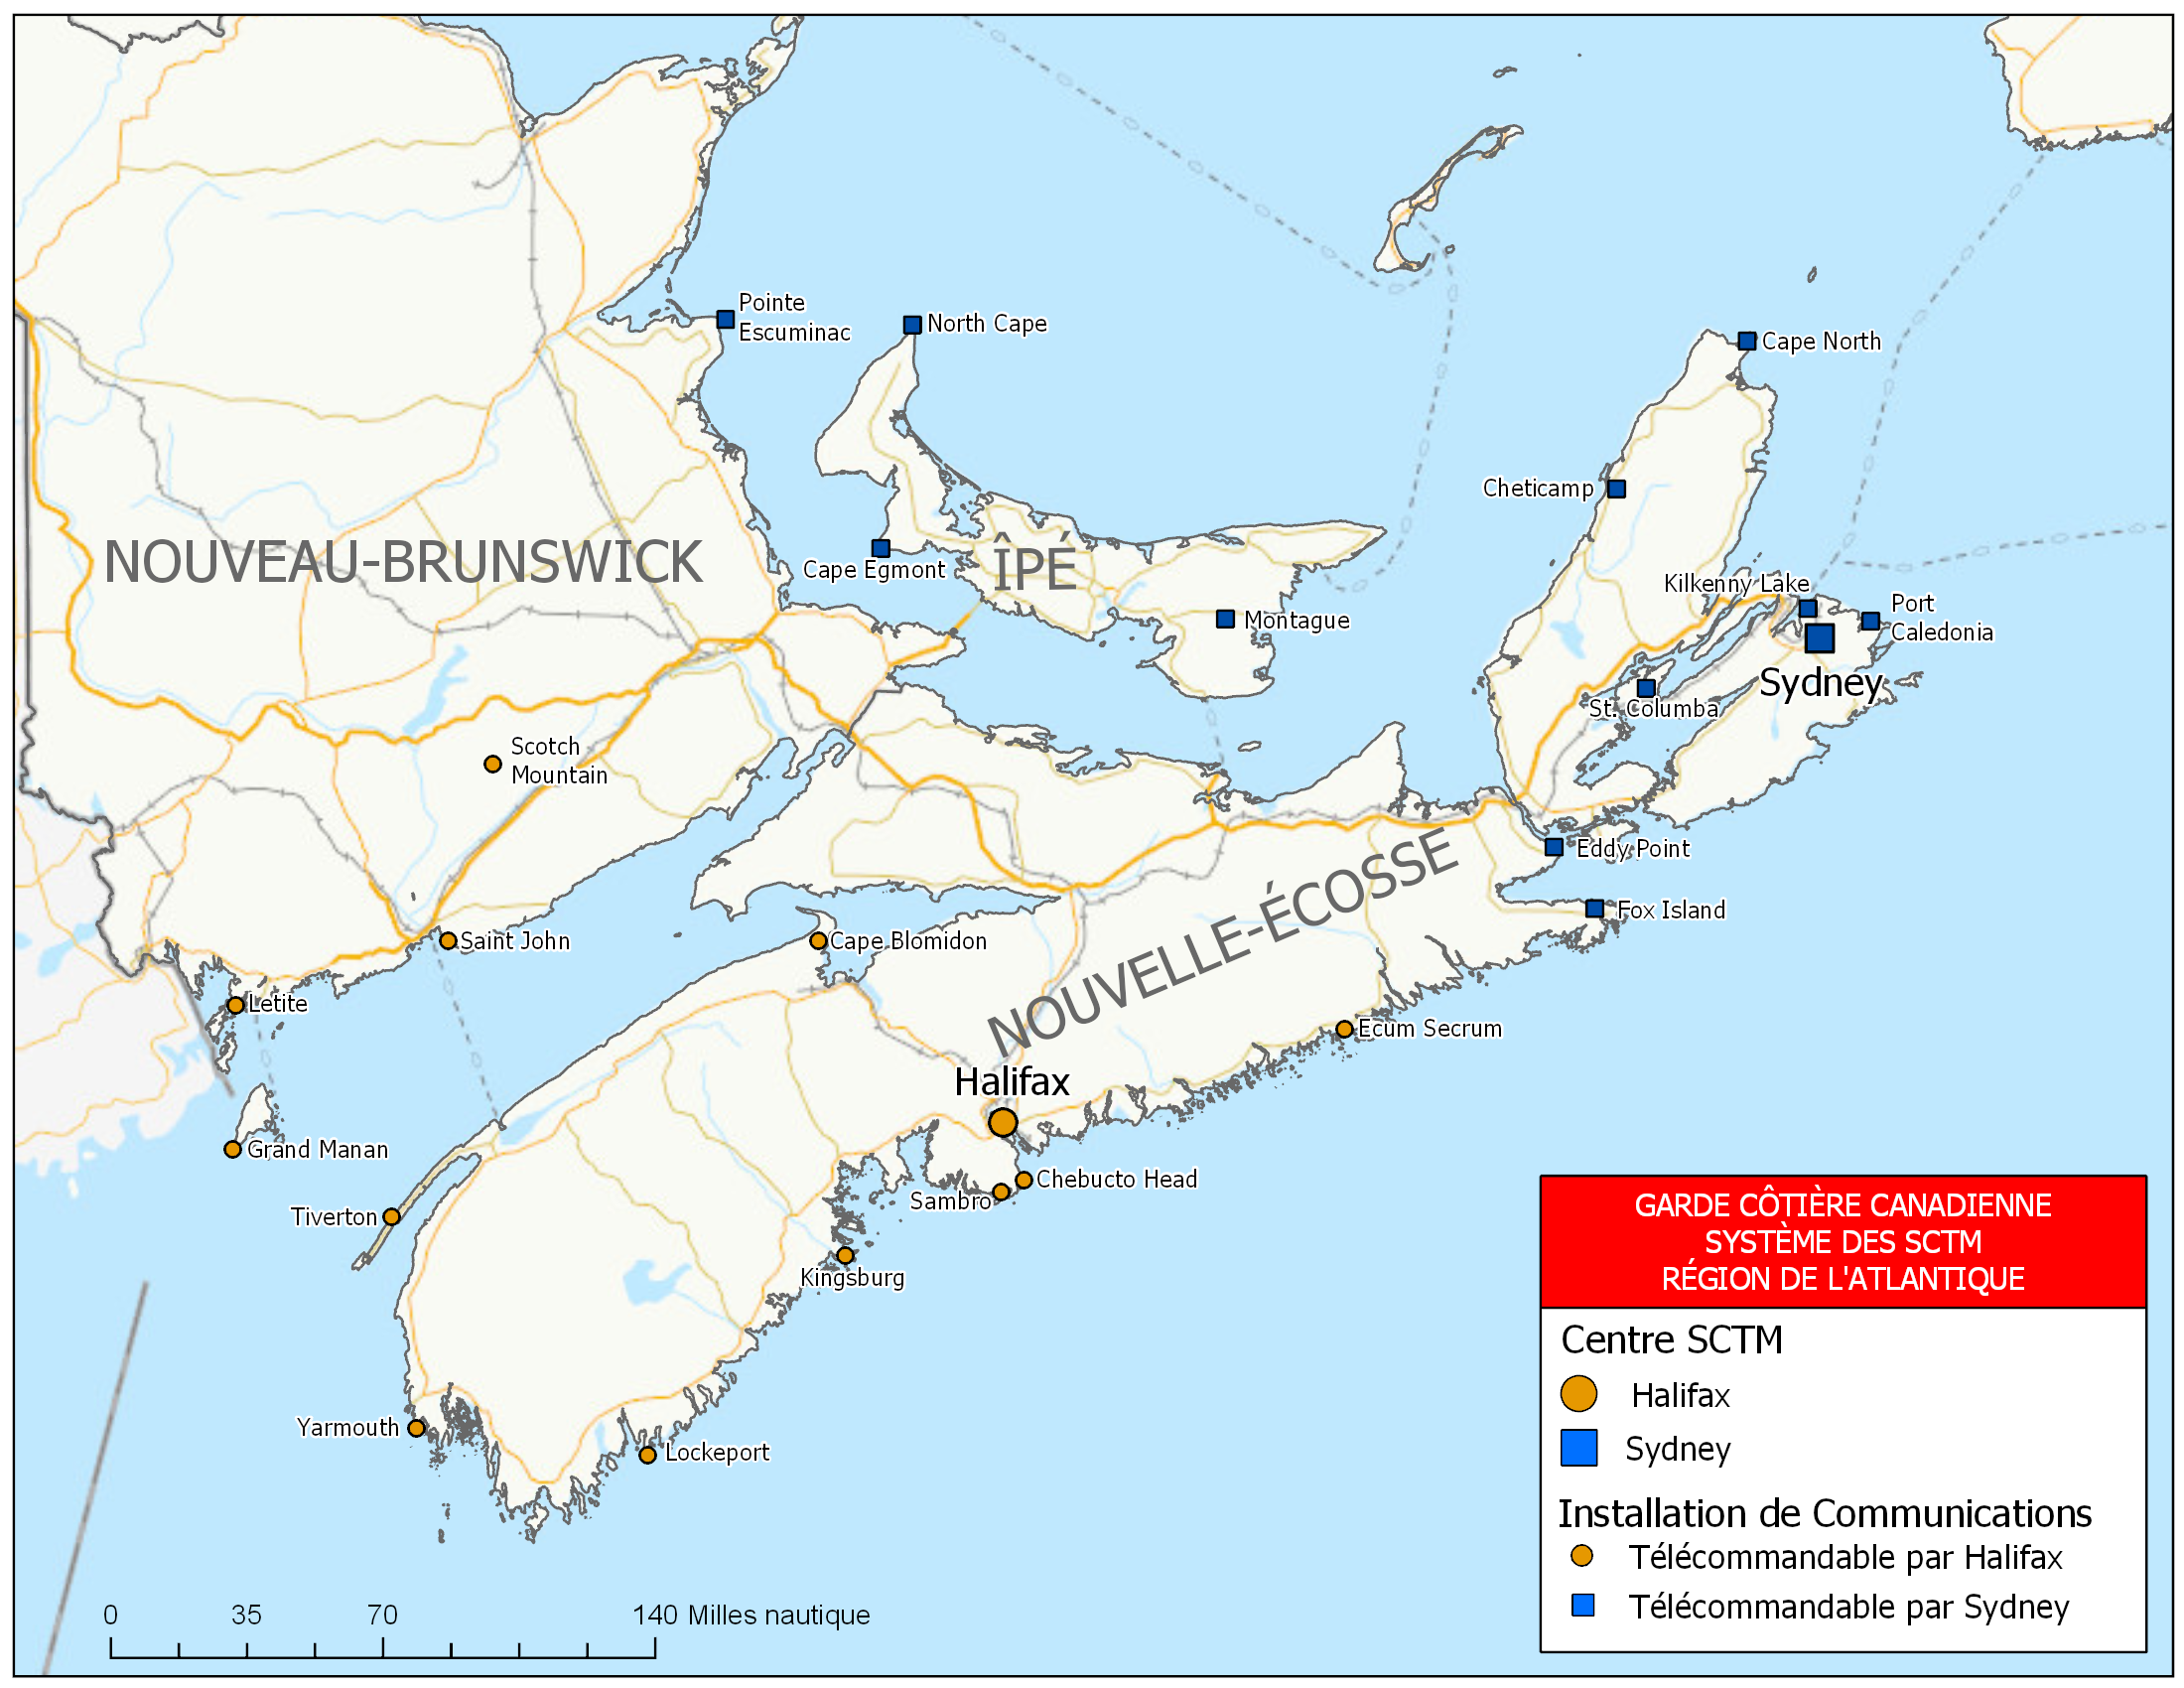 Système des SCTM : Centres et sites – Région de l’Atlantique – Maritimes (carte)